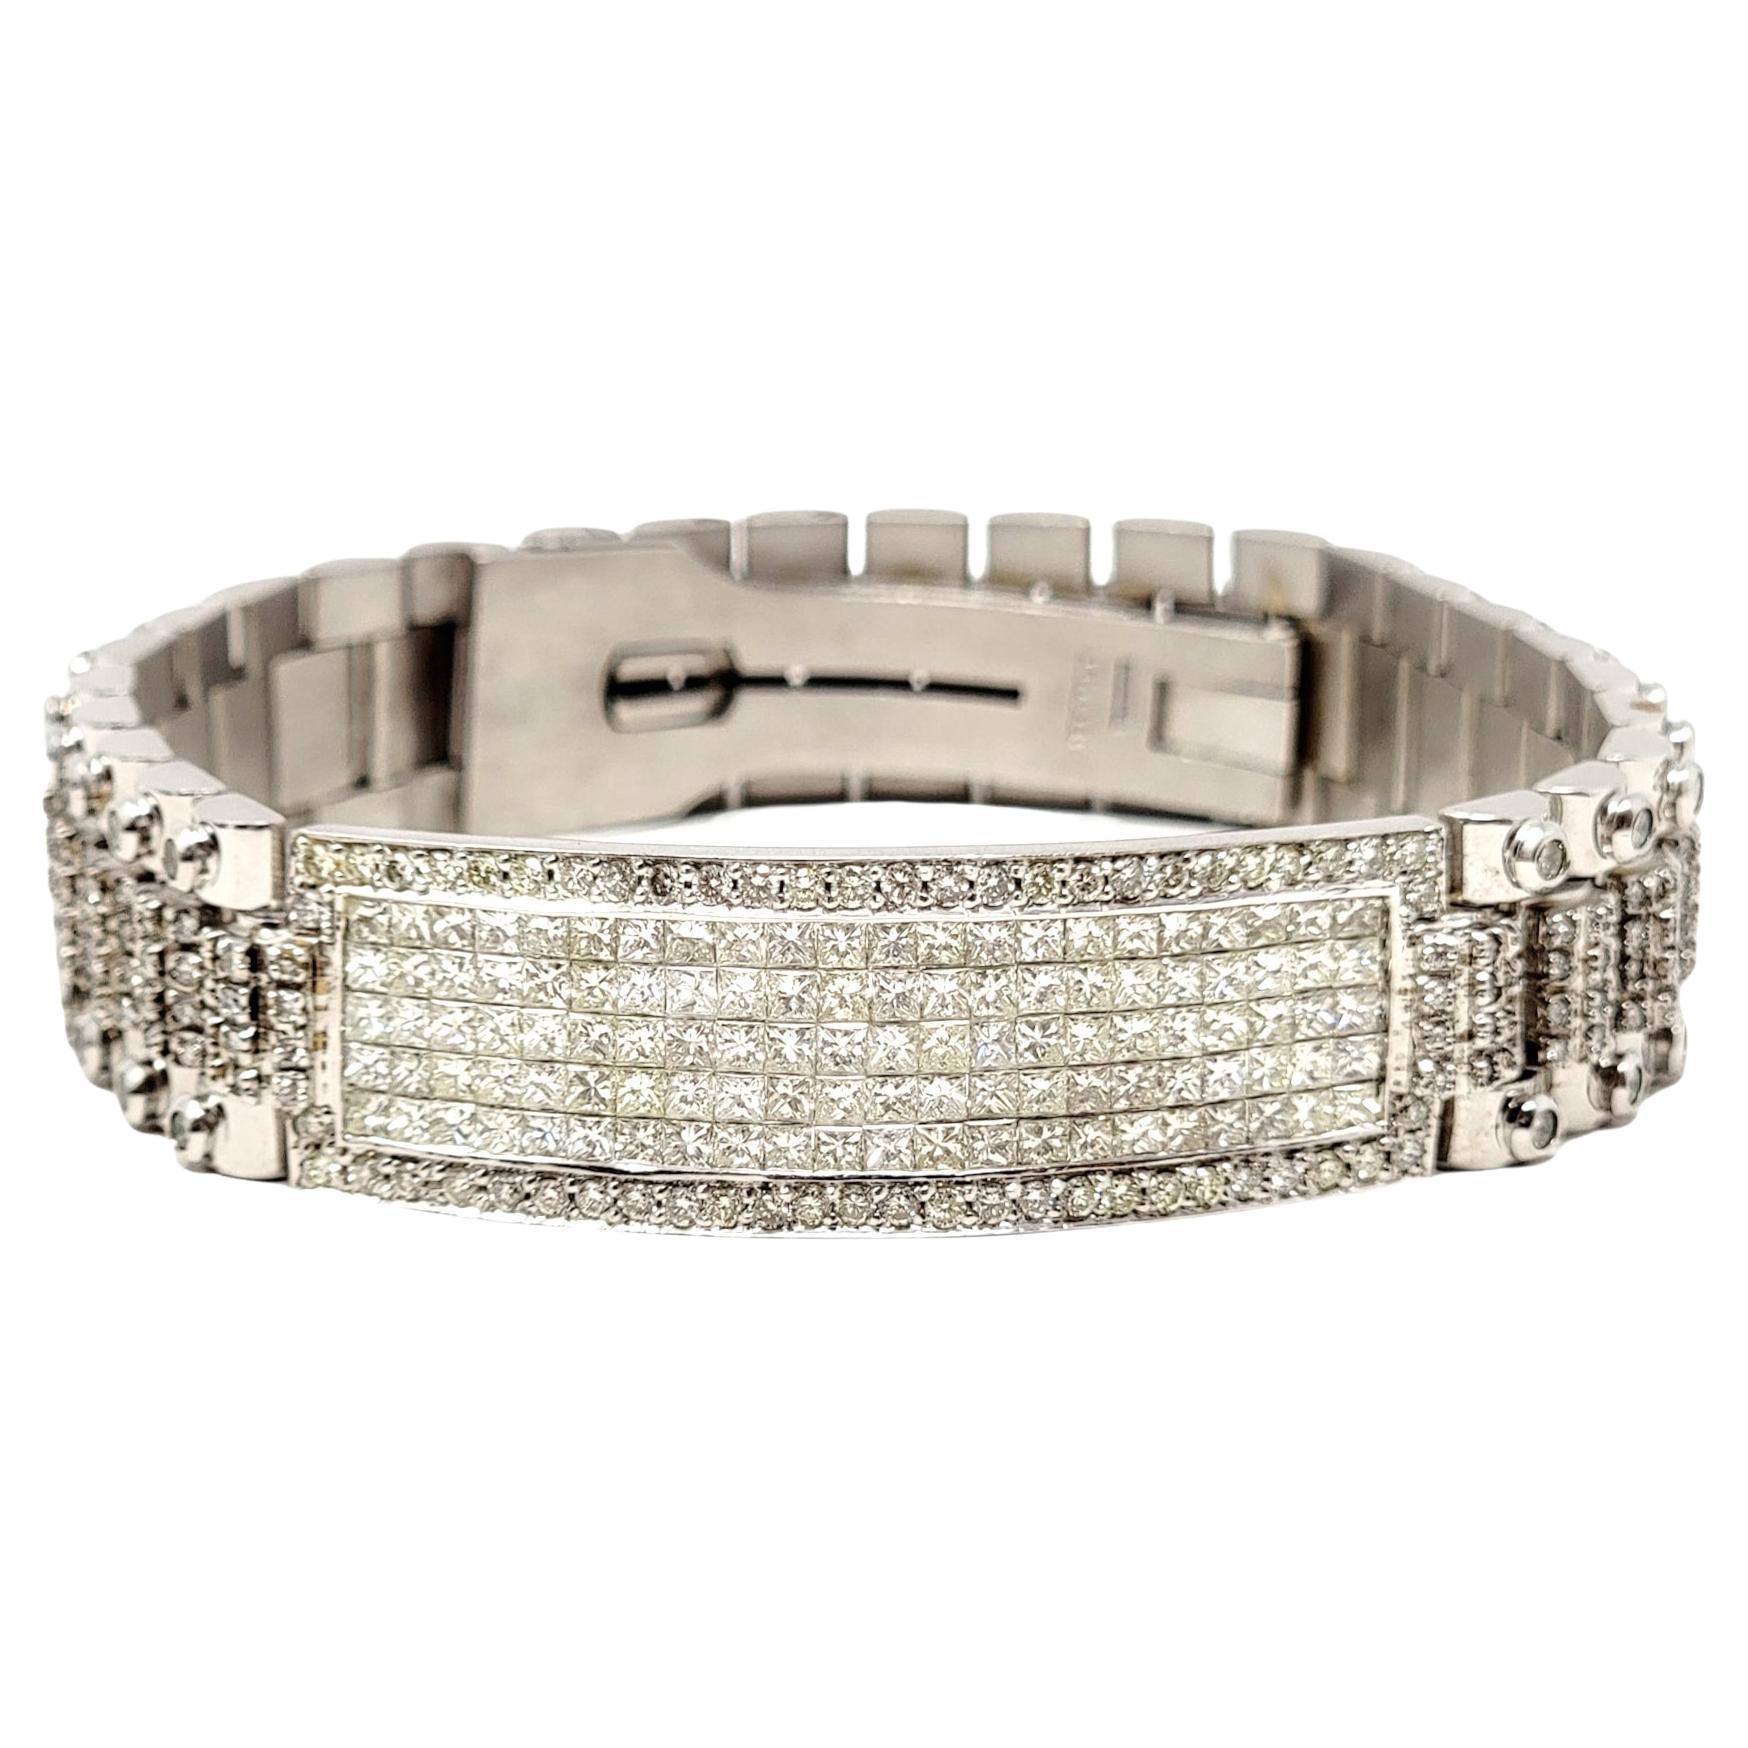 Shop Monte Carlo Fancy Shape Diamond Bracelet in 18K White Gold Online